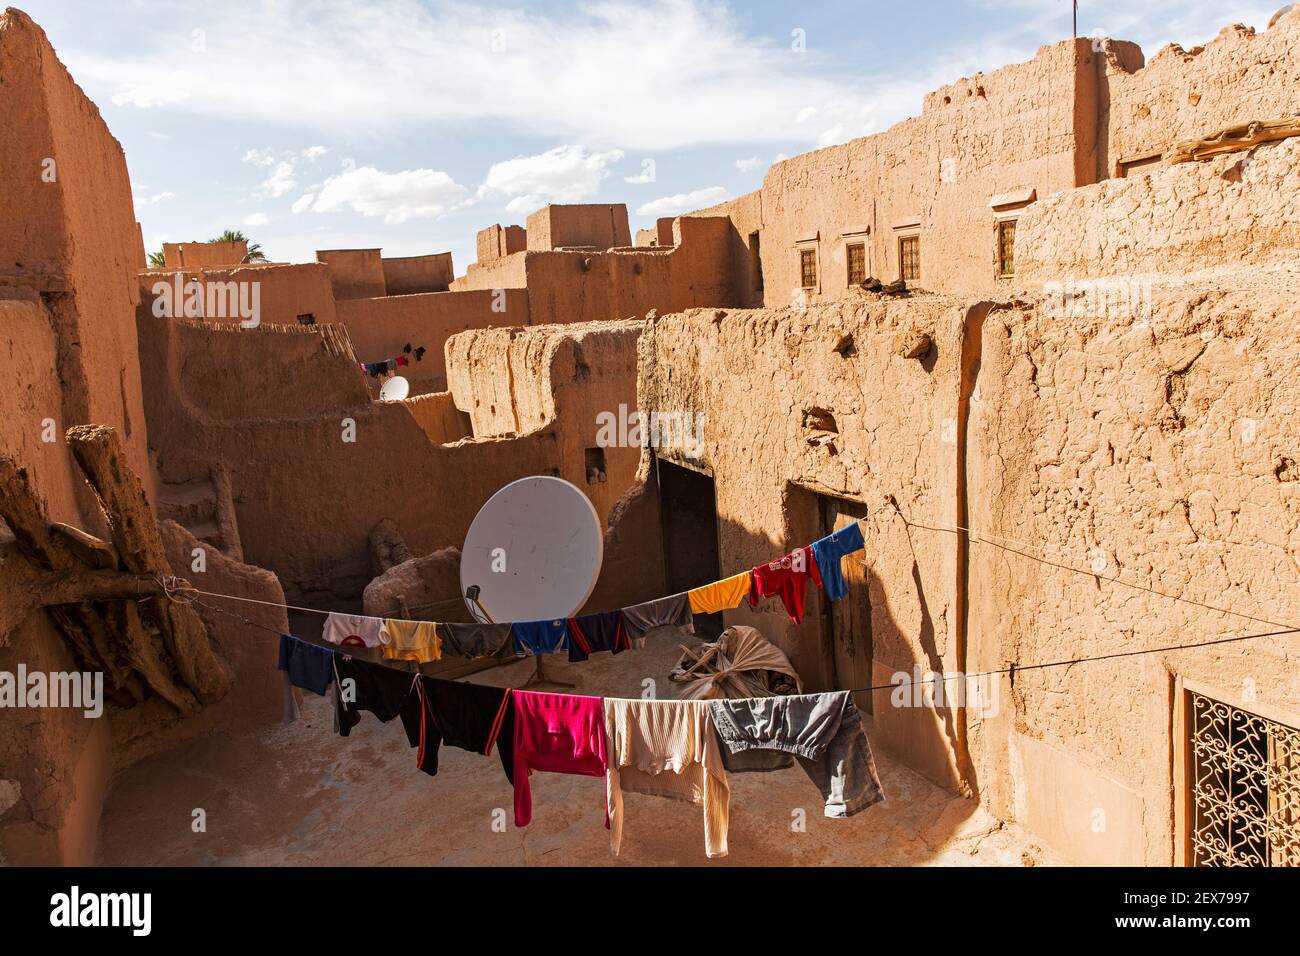 Marokko, Tinejdad, Todra-Tal, Ksar El Khorbat, ist ein Dorf von befestigten Mauern aus Erde, mit Satellitenschüssel und hängende Wäsche Stockfoto